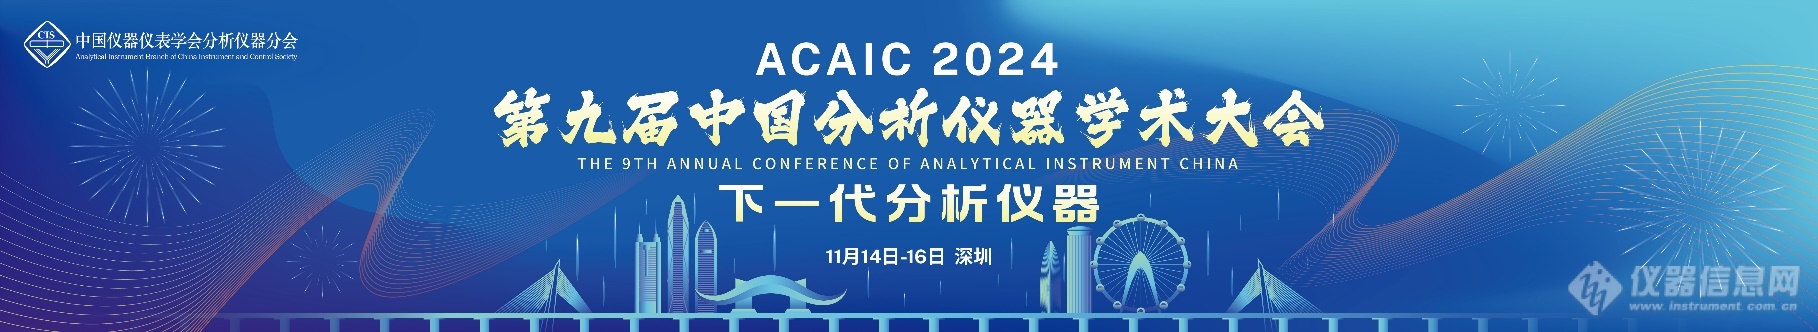 第九届中国分析仪器学术大会（ACAIC 2024）  第一轮通知